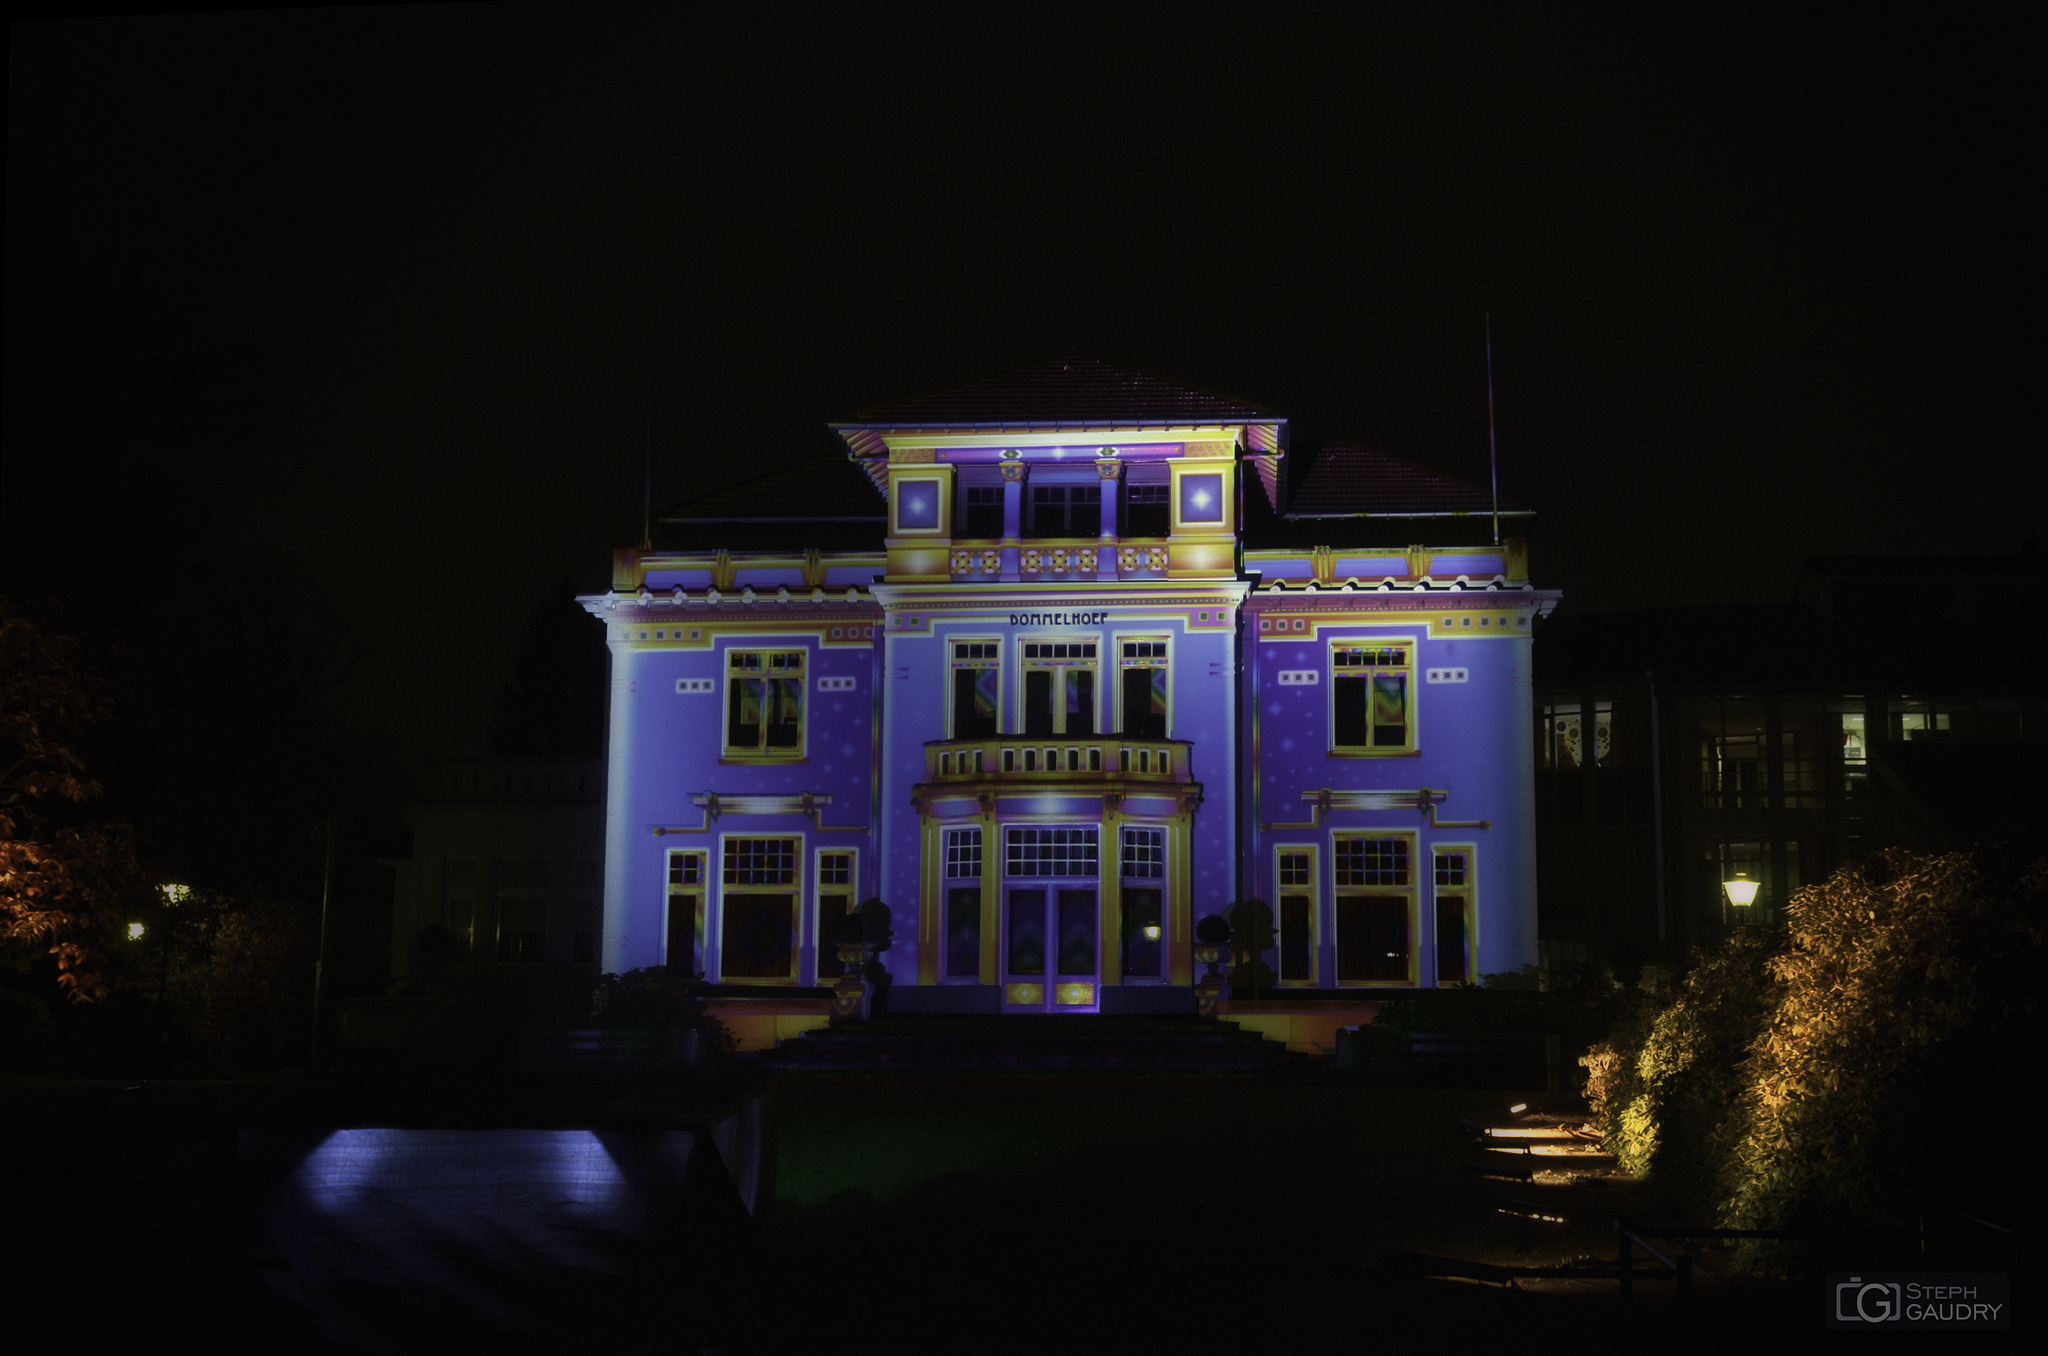 Eindhoven glow 2013 - CHROMOLITHE (v1) [Click to start slideshow]